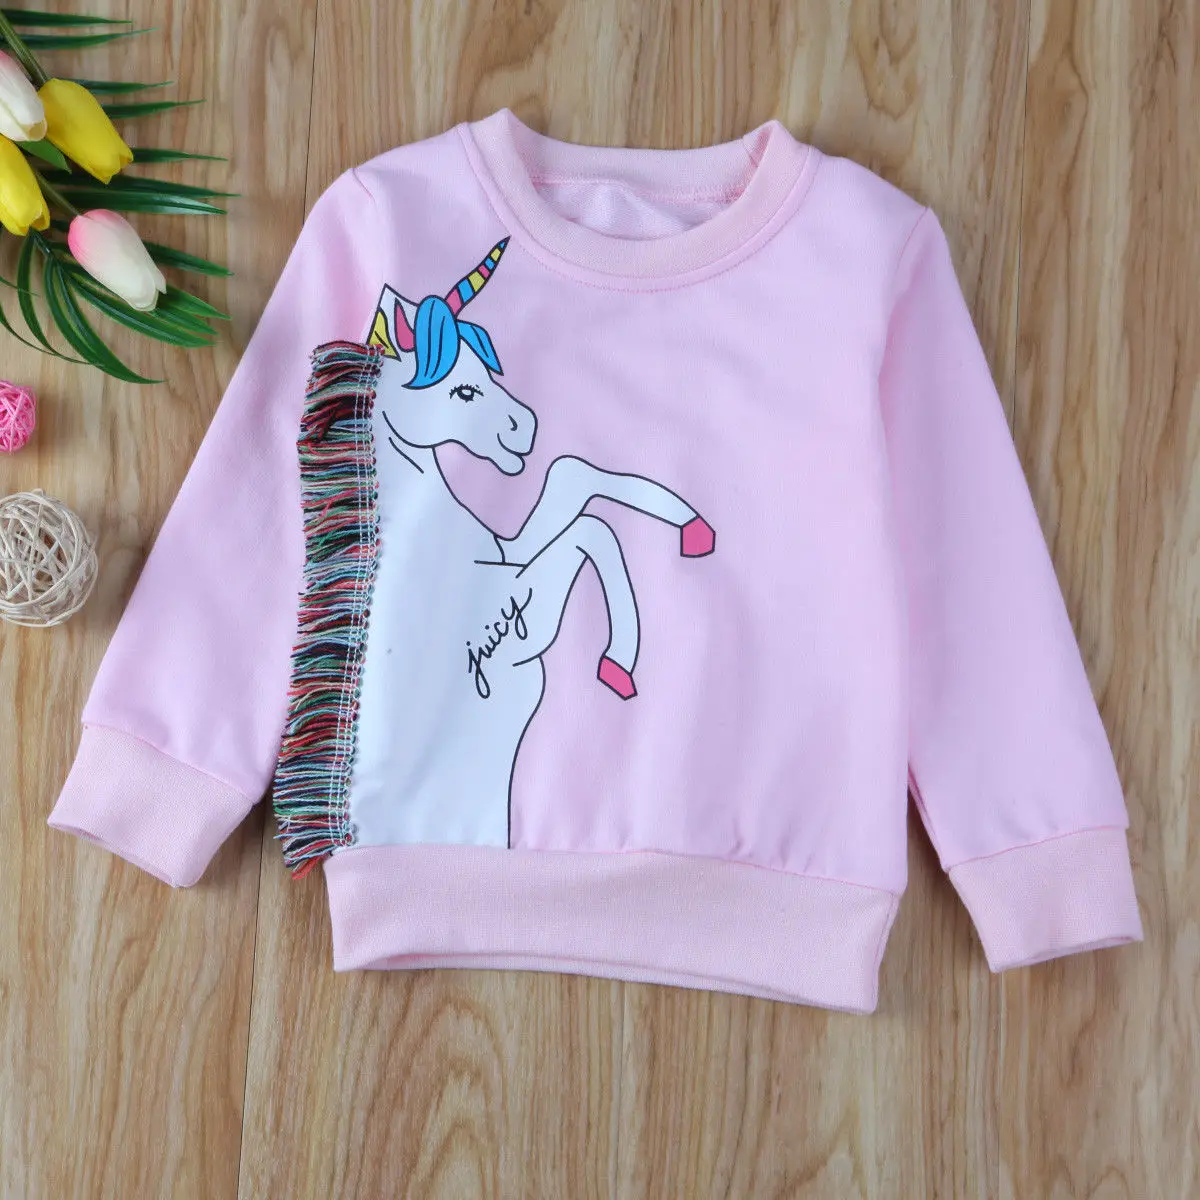 Pudcoco/свитера для девочек; свитер с единорогом для маленьких девочек; футболка; весенняя одежда; свитер; От 1 до 7 лет